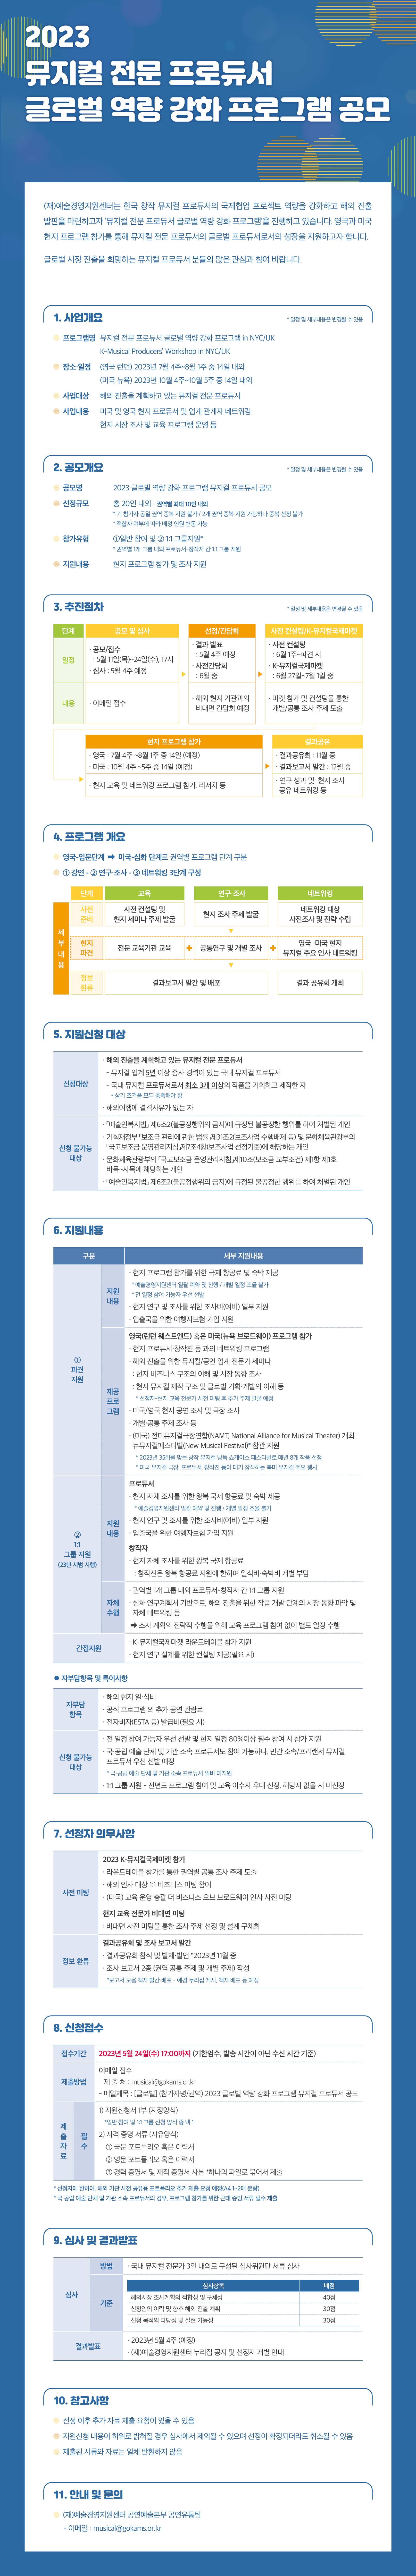 2023 뮤지컬 전문 프로듀서 글로벌 역량 강화 프로그램 공모